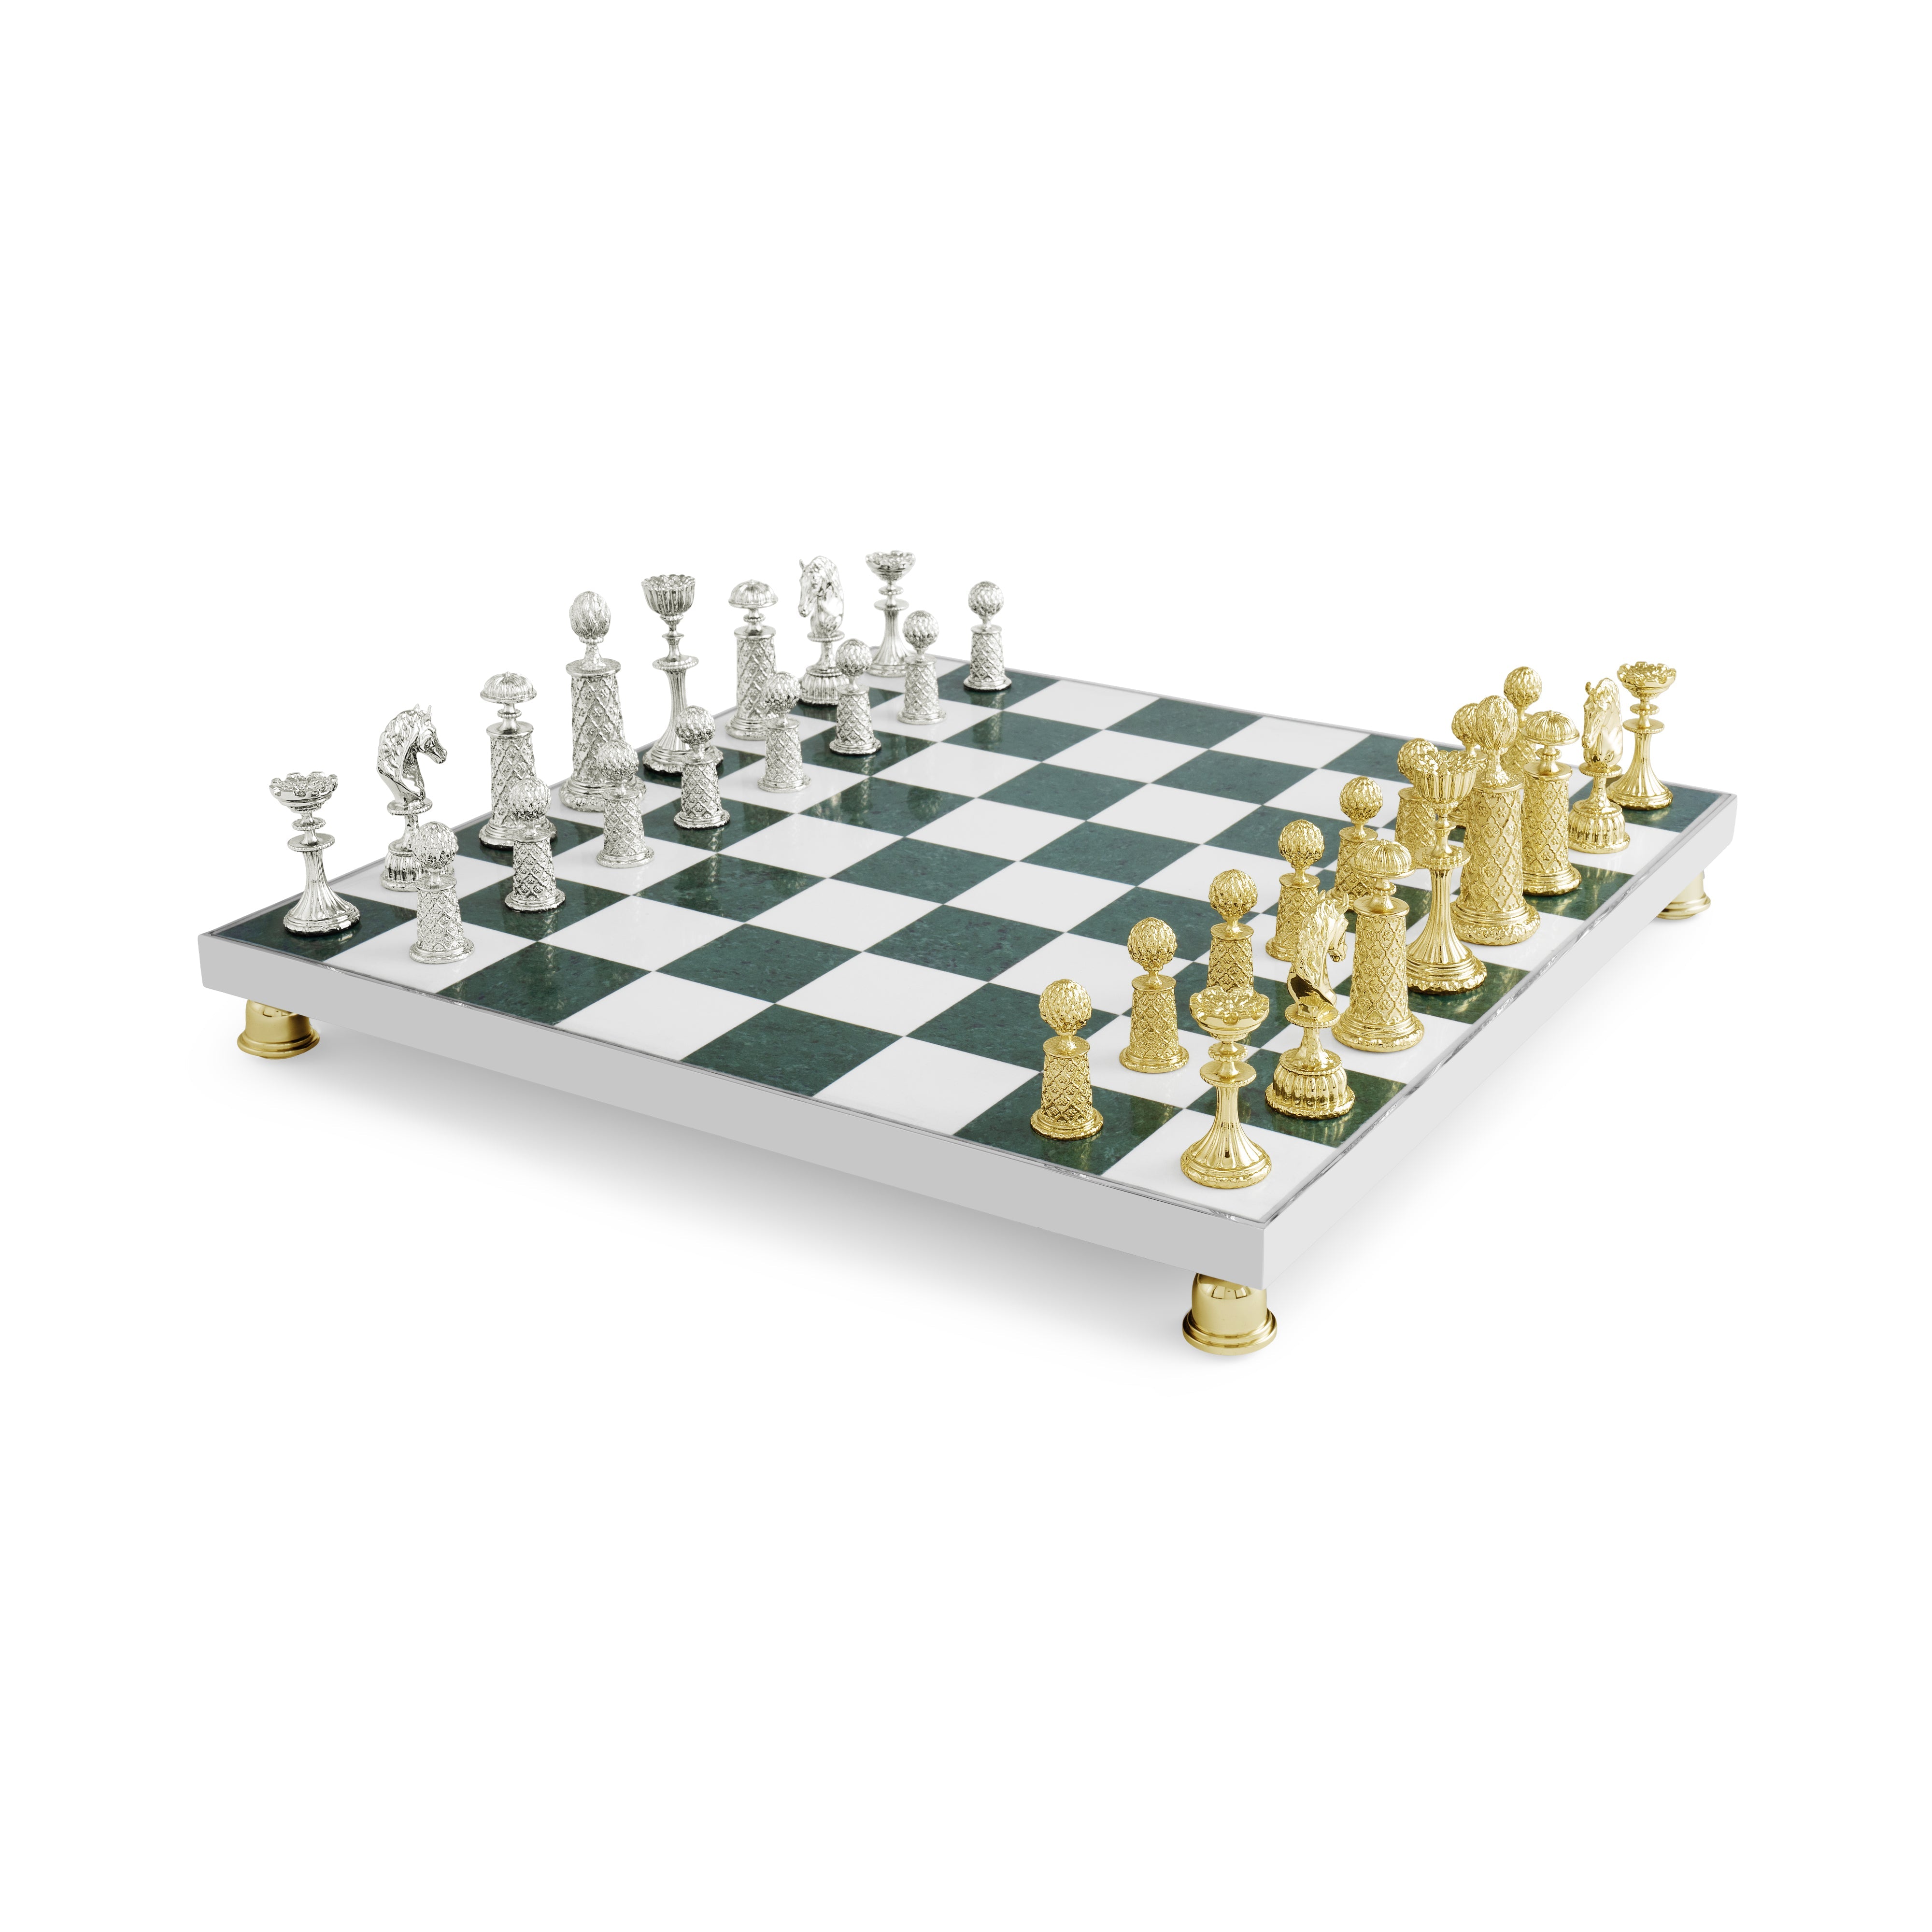 Palace Chess Set – Michael Aram